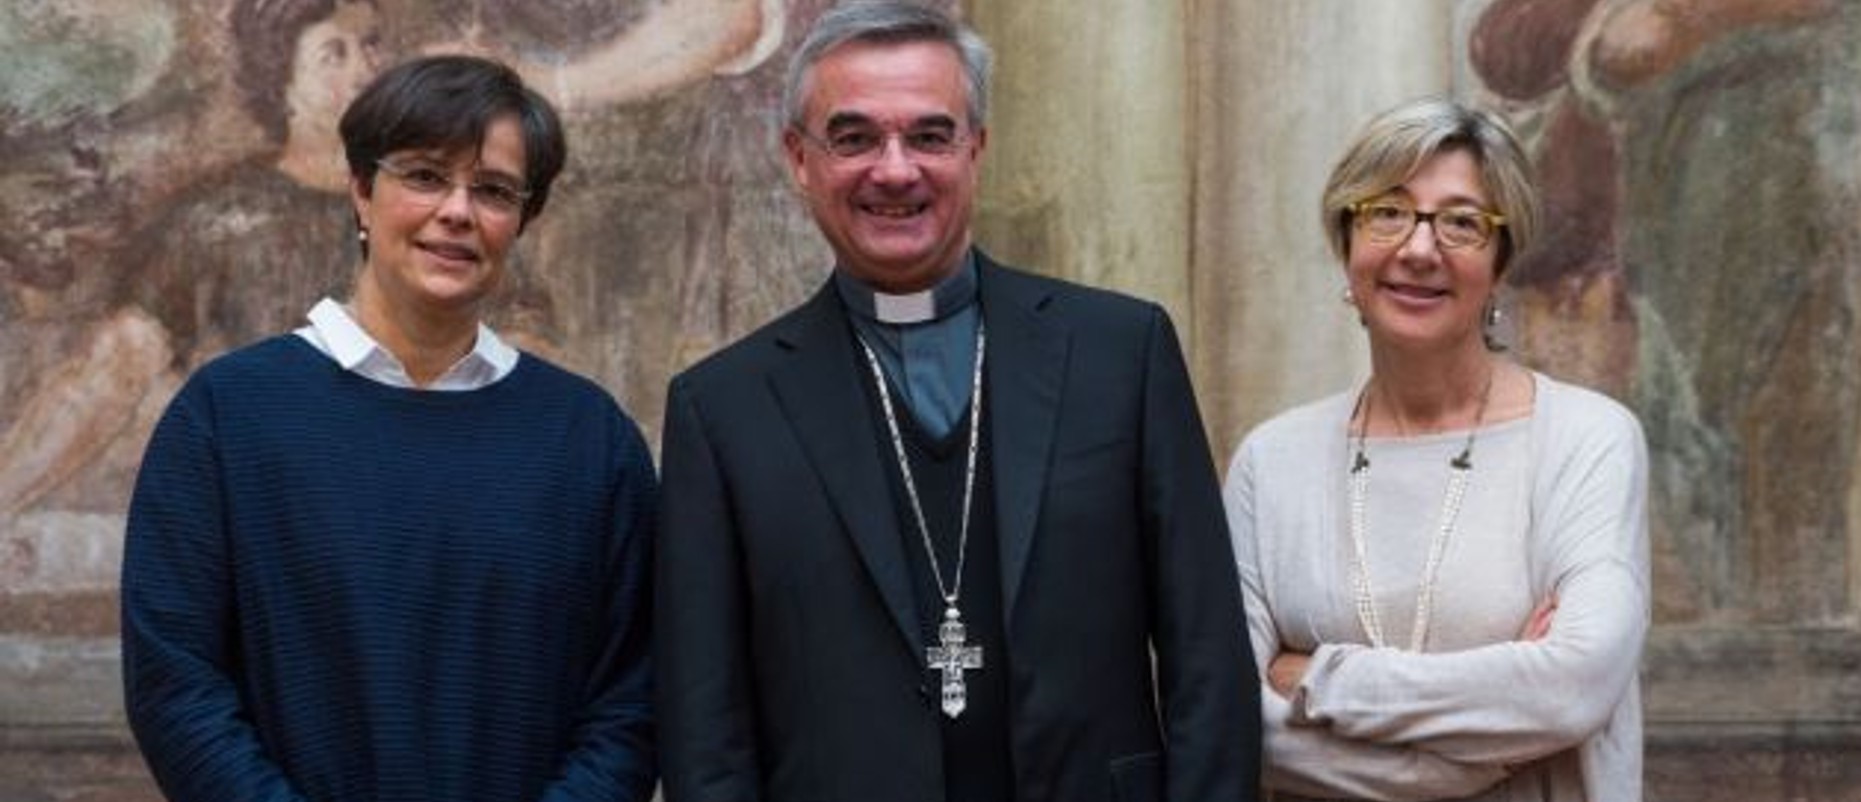 Corinne Zaugg (à dr.), présidente de l'Union des femmes catholiques du Tessin, et Beatrice Brenni, membre,  entourent Mgr Valerio Lazzeri, évêque de Lugano | © catt.ch